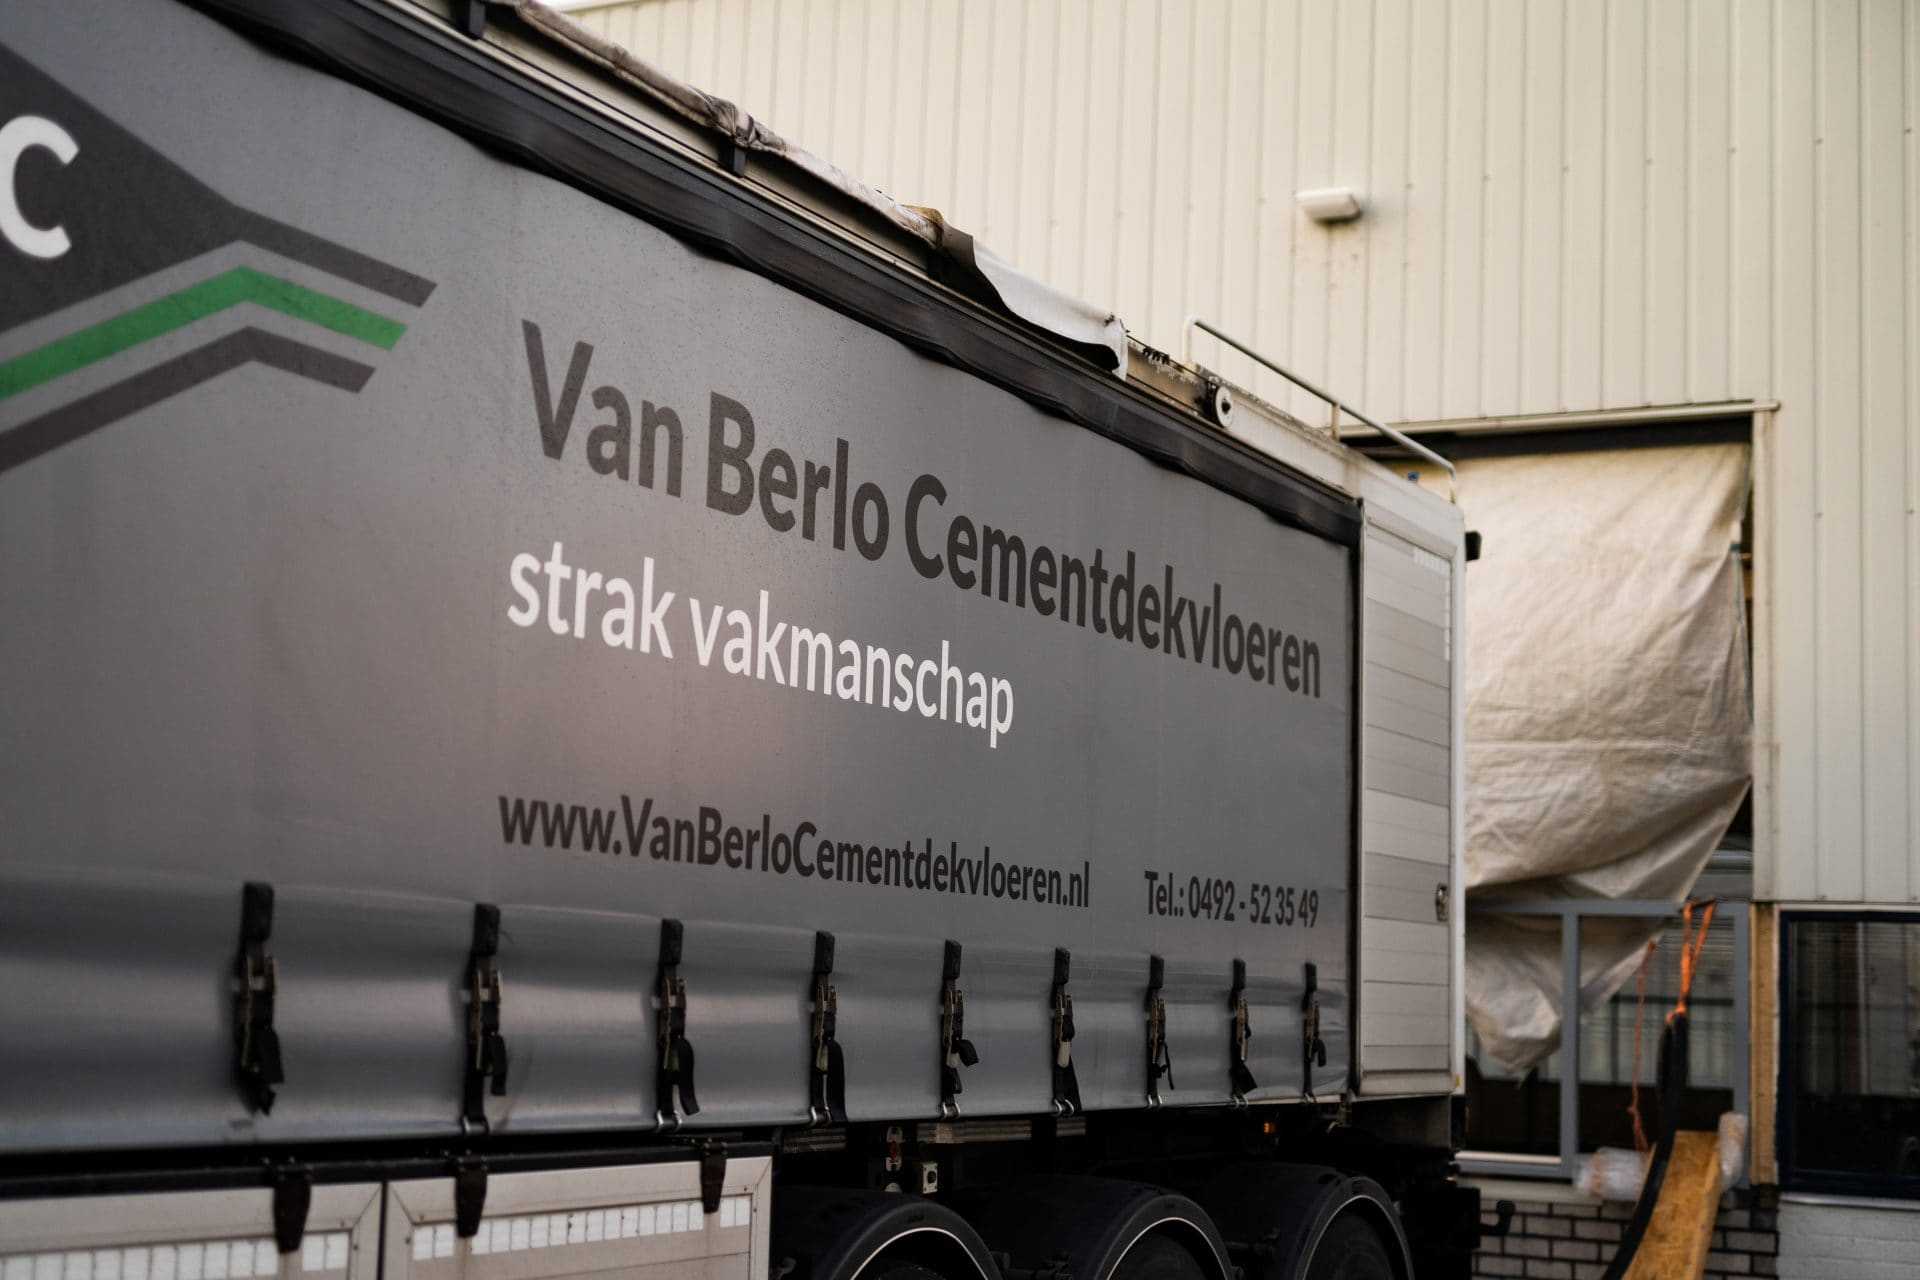 Truck Van Berlo cementdekvloeren